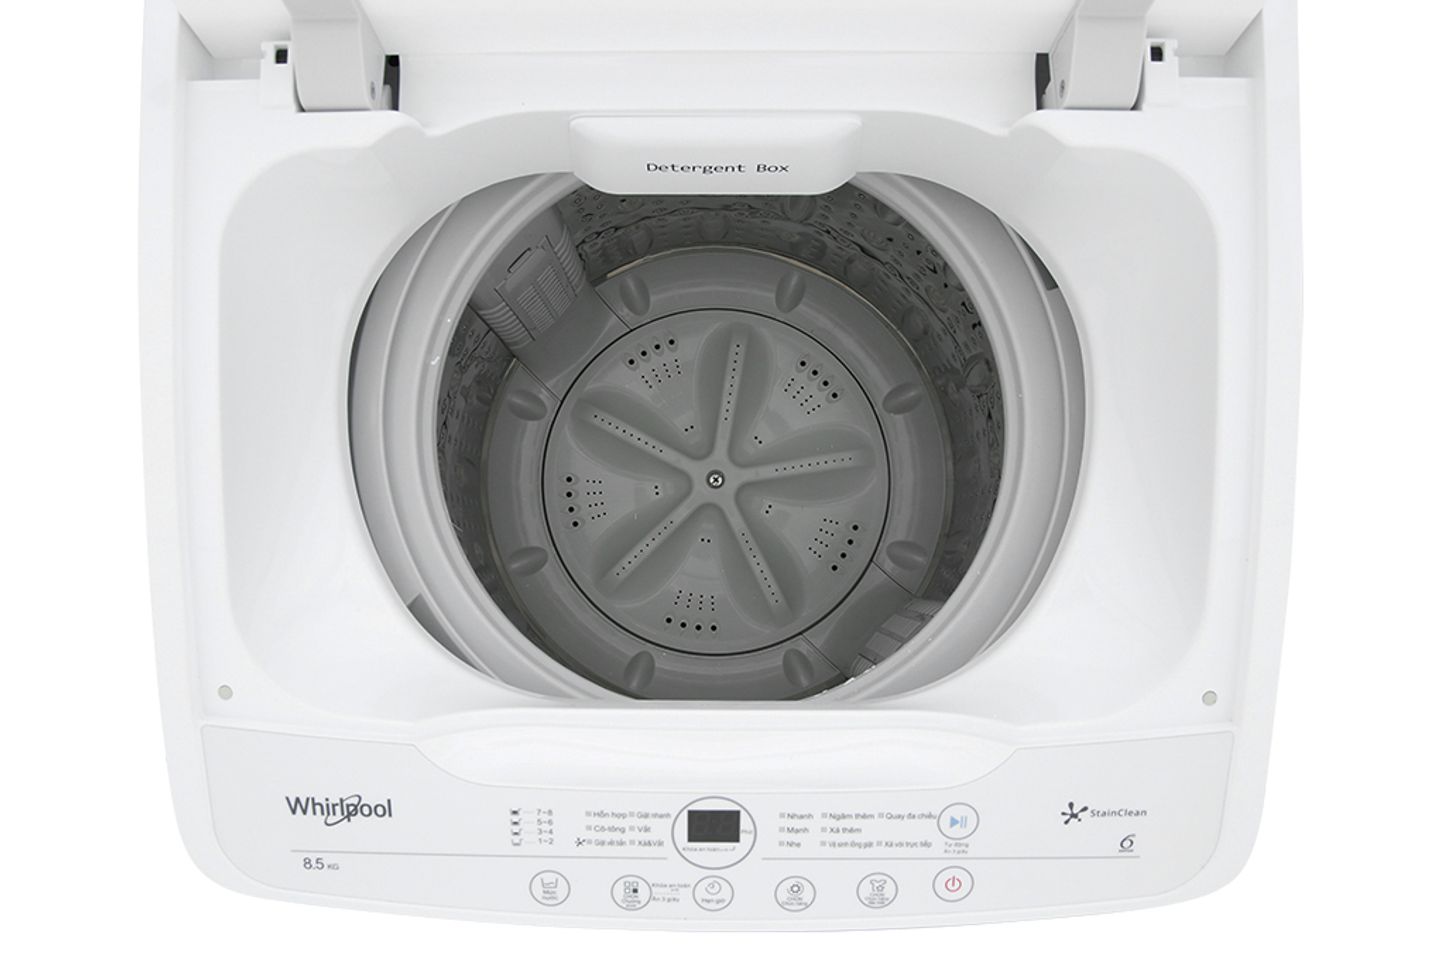 Máy giặt Whirlpool 8.5 kg VWVC8502FW thiết kế hiện đai, tiện dụng